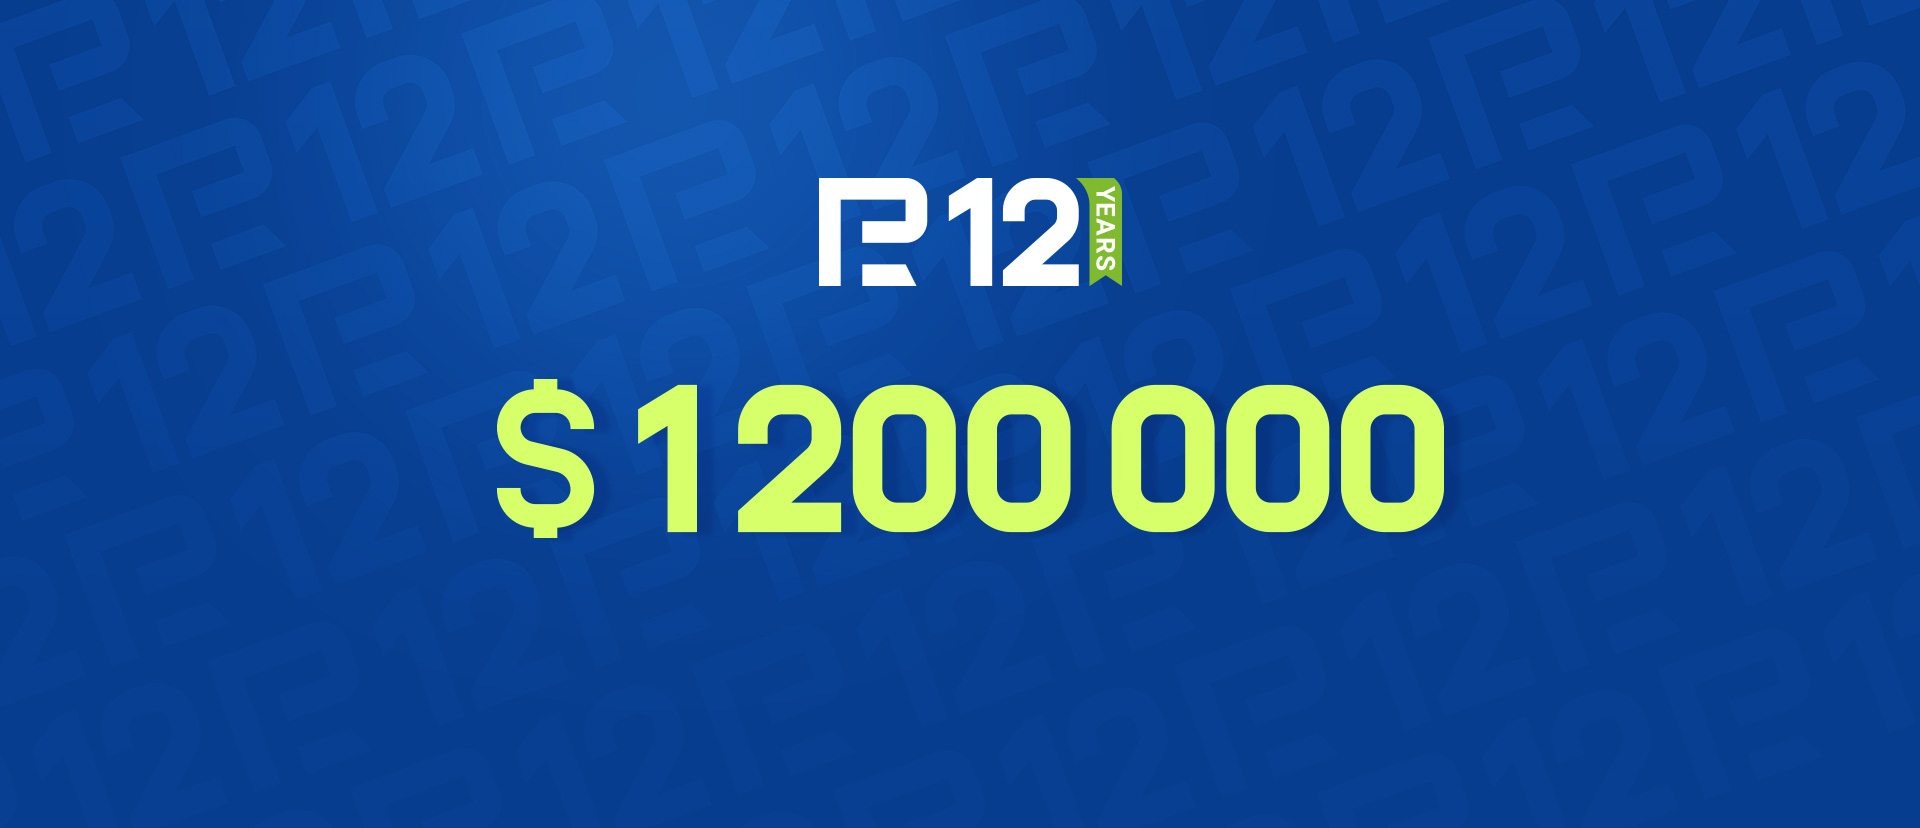 Aktion mit einem Preispool von 1,200,000 $ von RoboForex. Mitmachen und gewinnen!